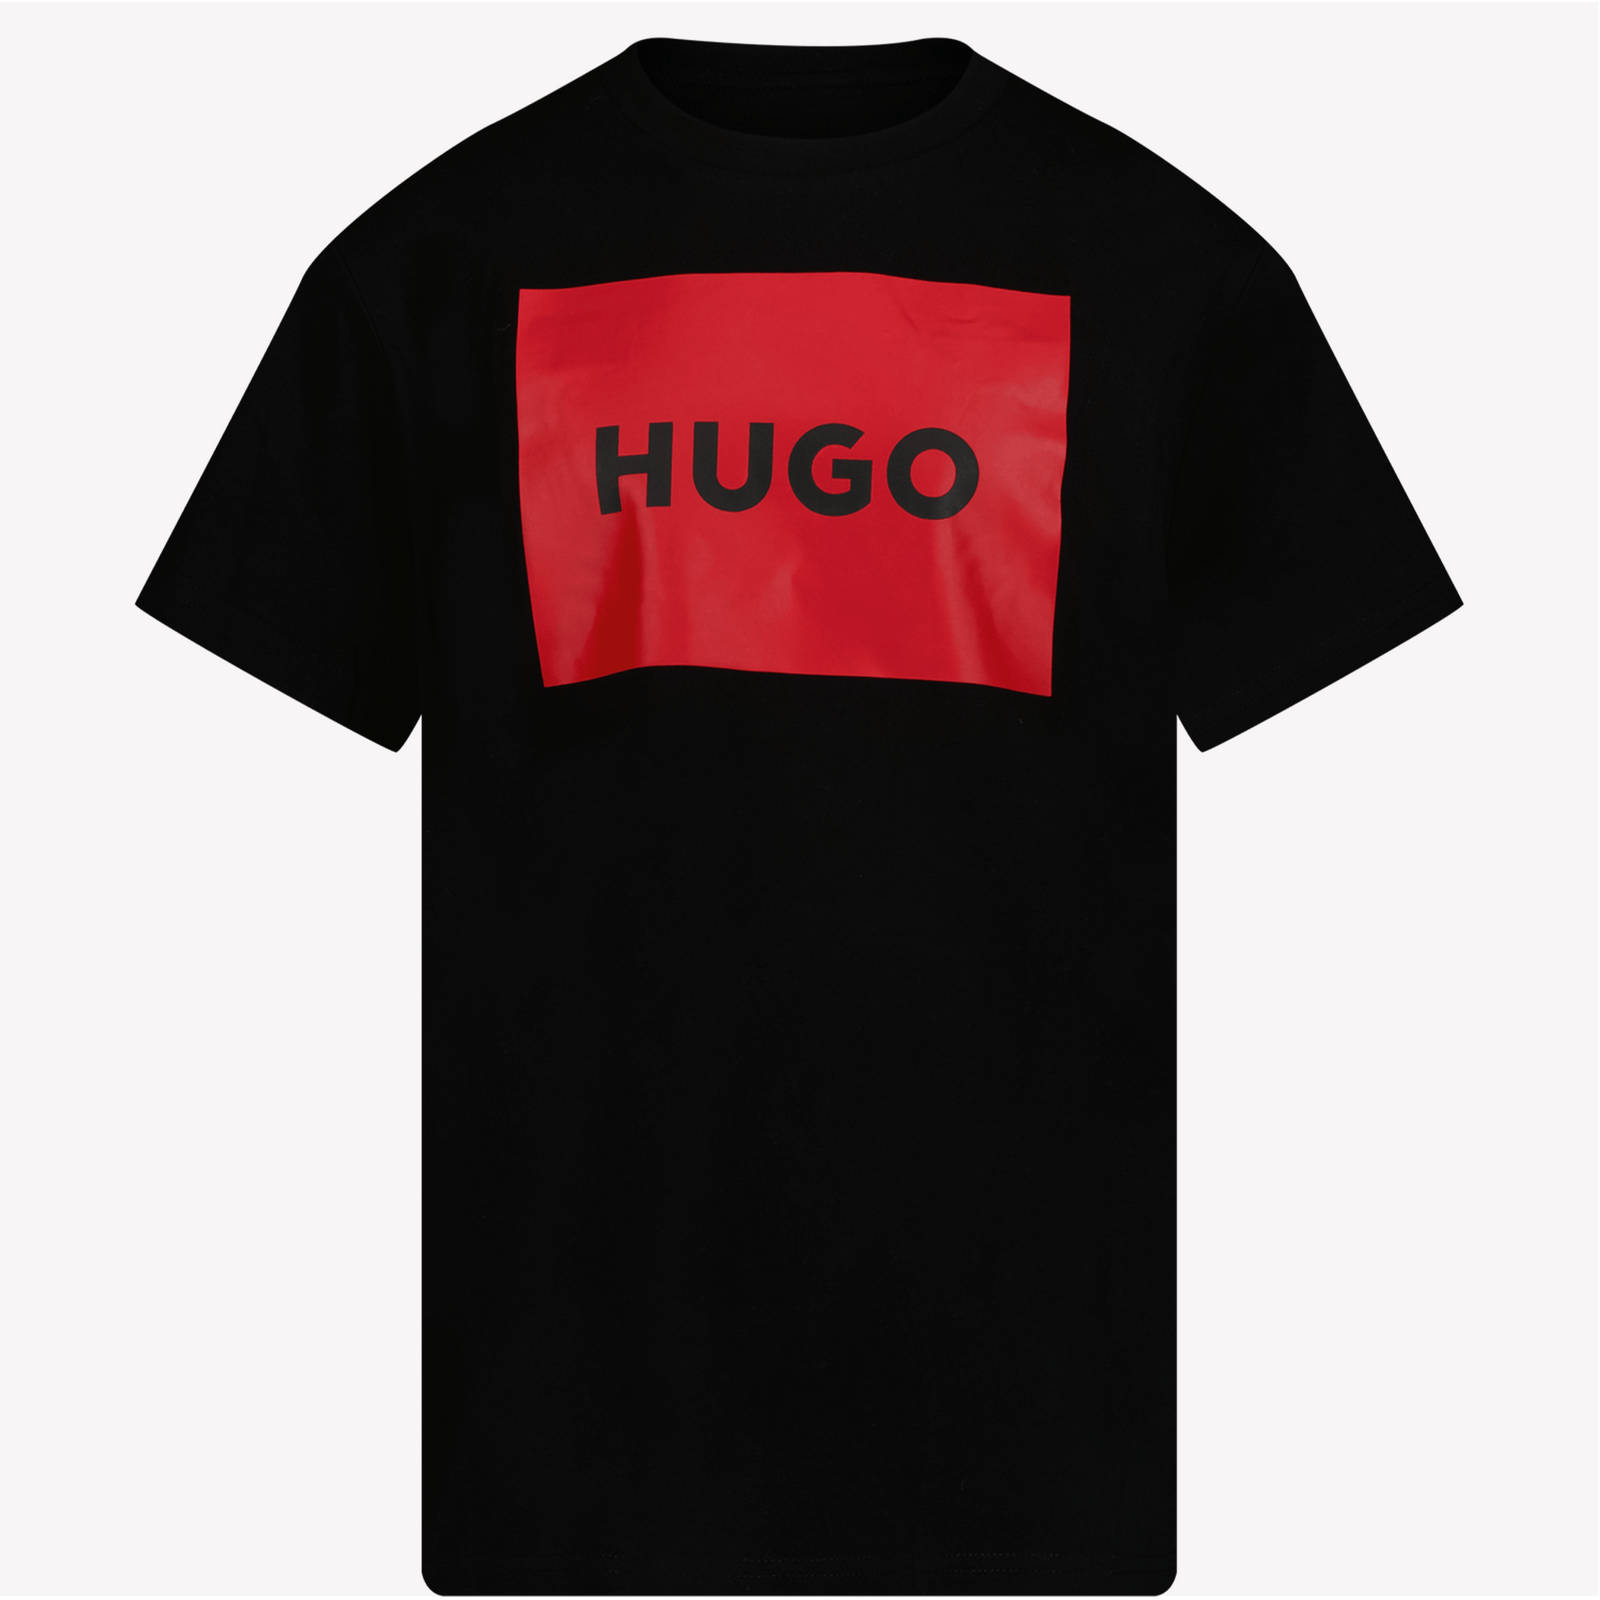 HUGO Kinder Jongens T-Shirt Zwart 4Y